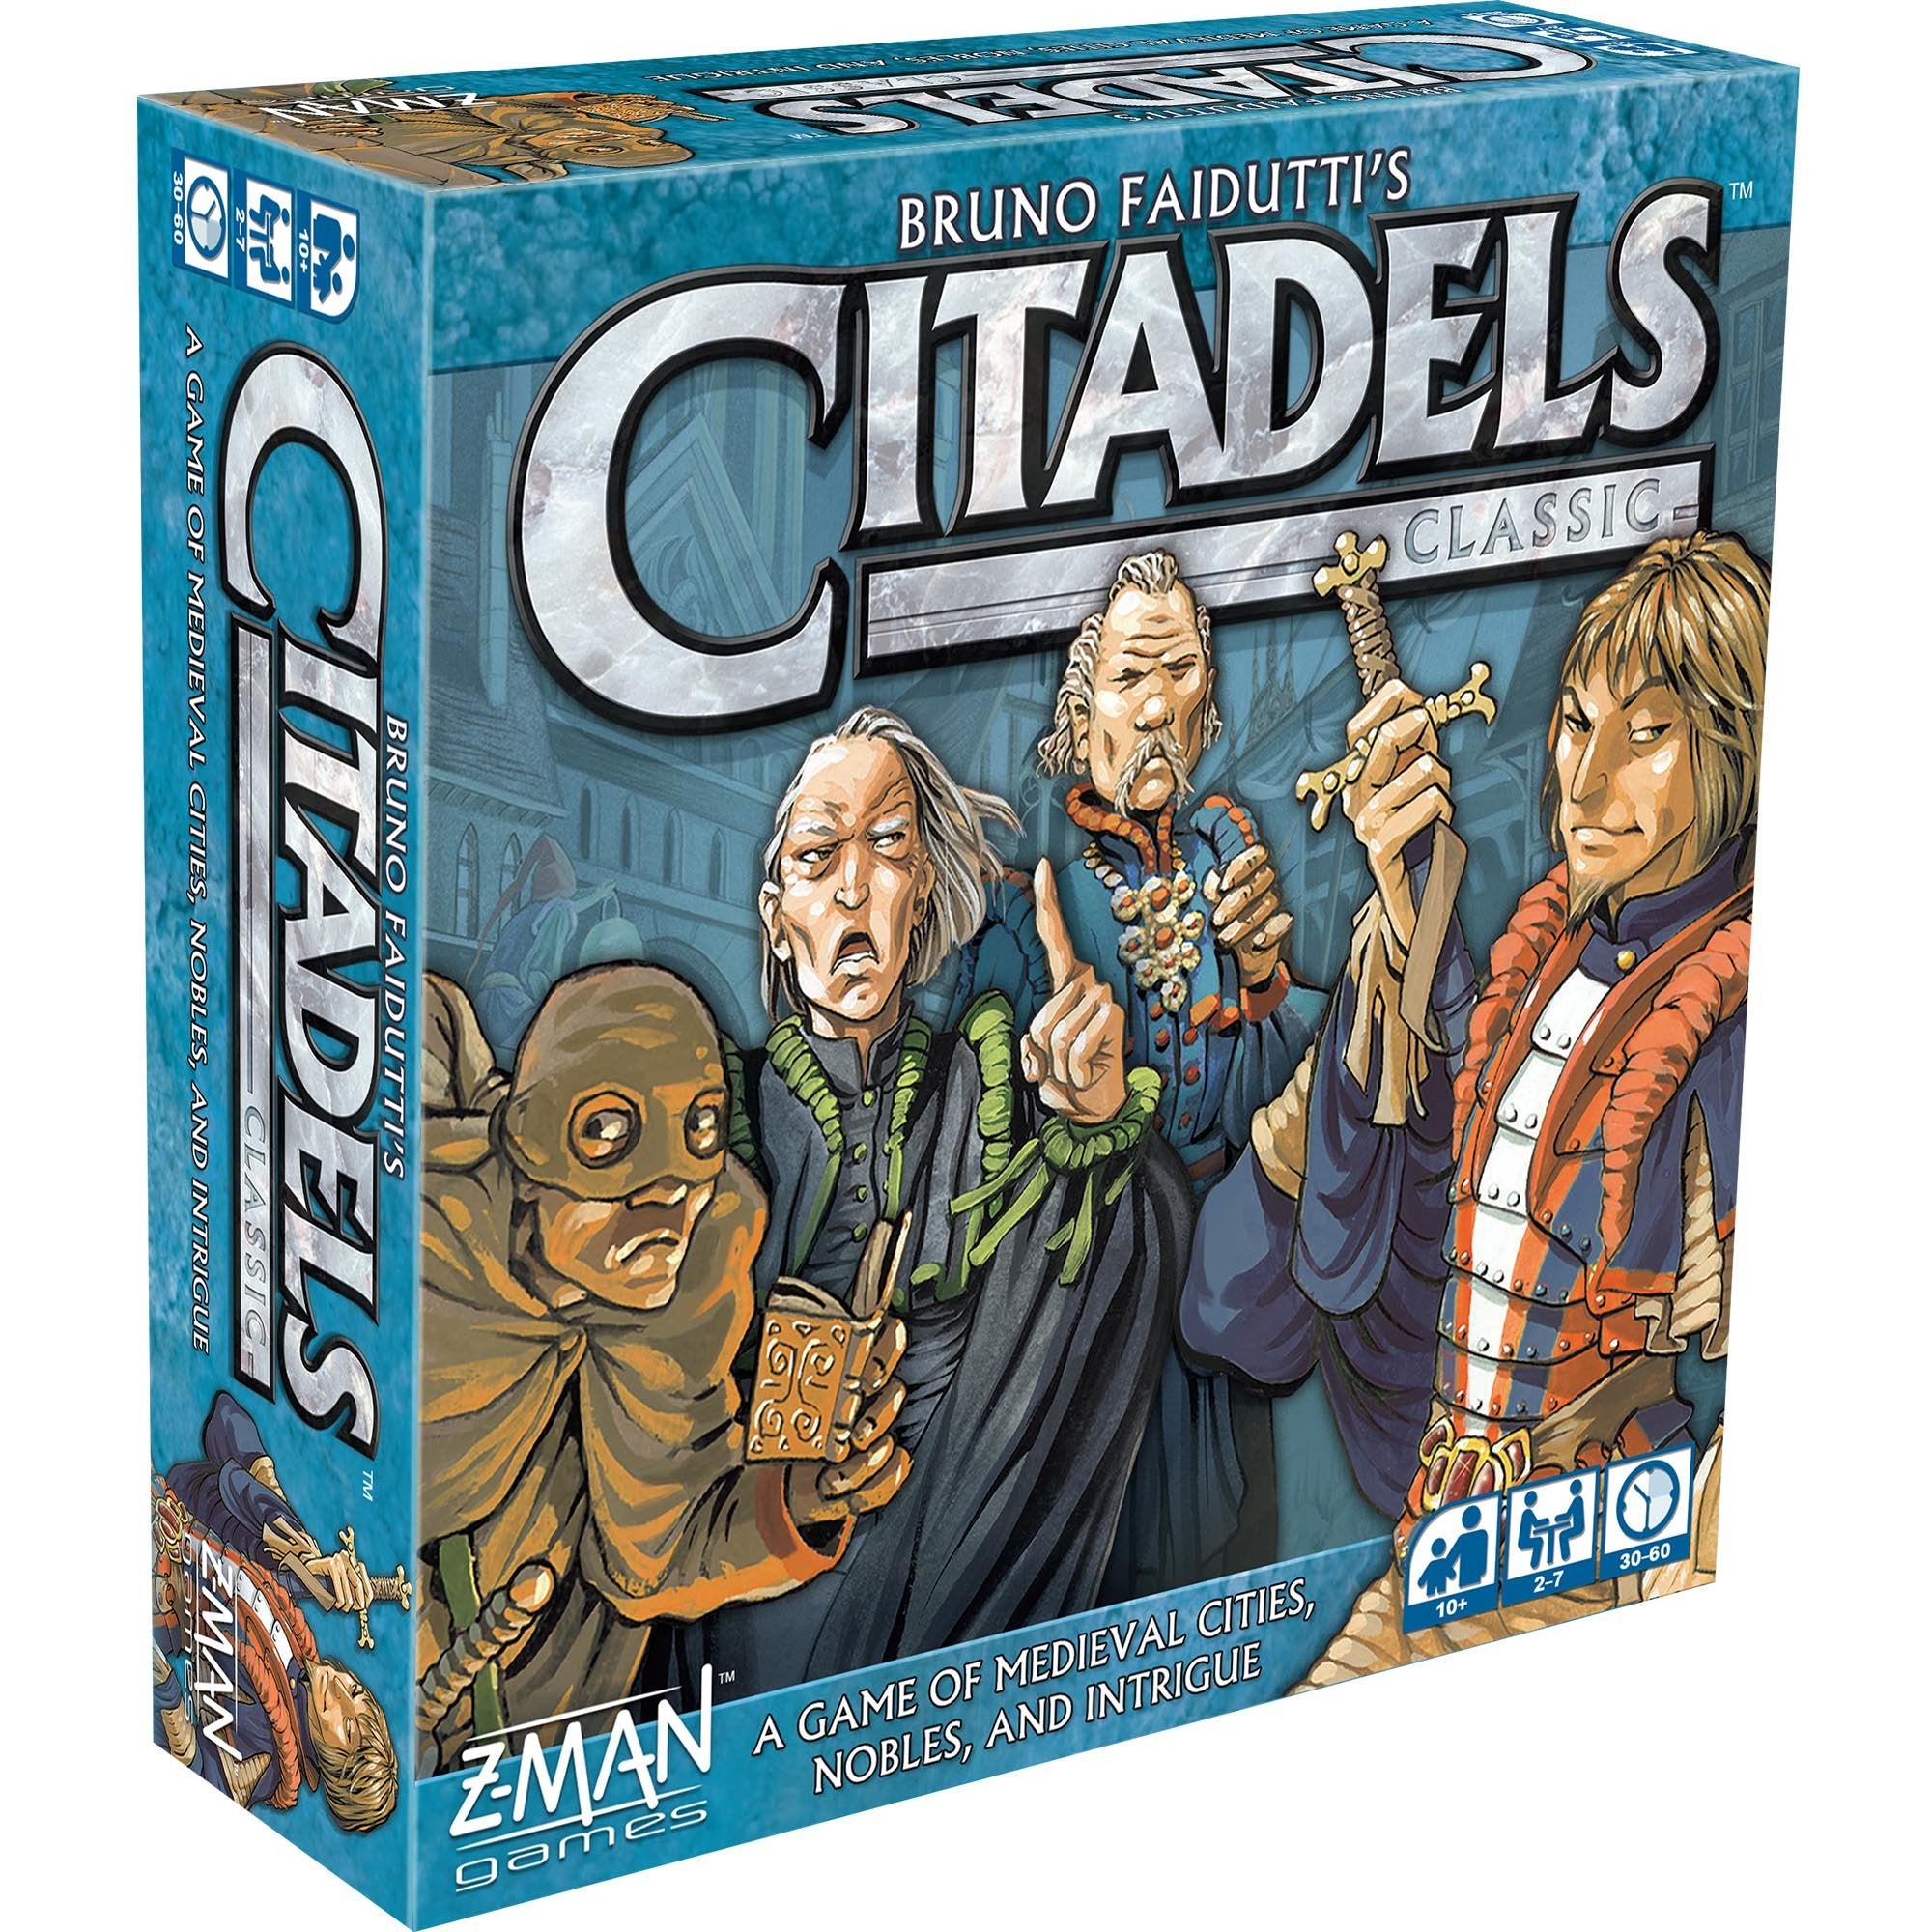 სამაგიდო თამაში ციტადელები კლასიკური (Citadels Classic) სამაგიდო თამაში